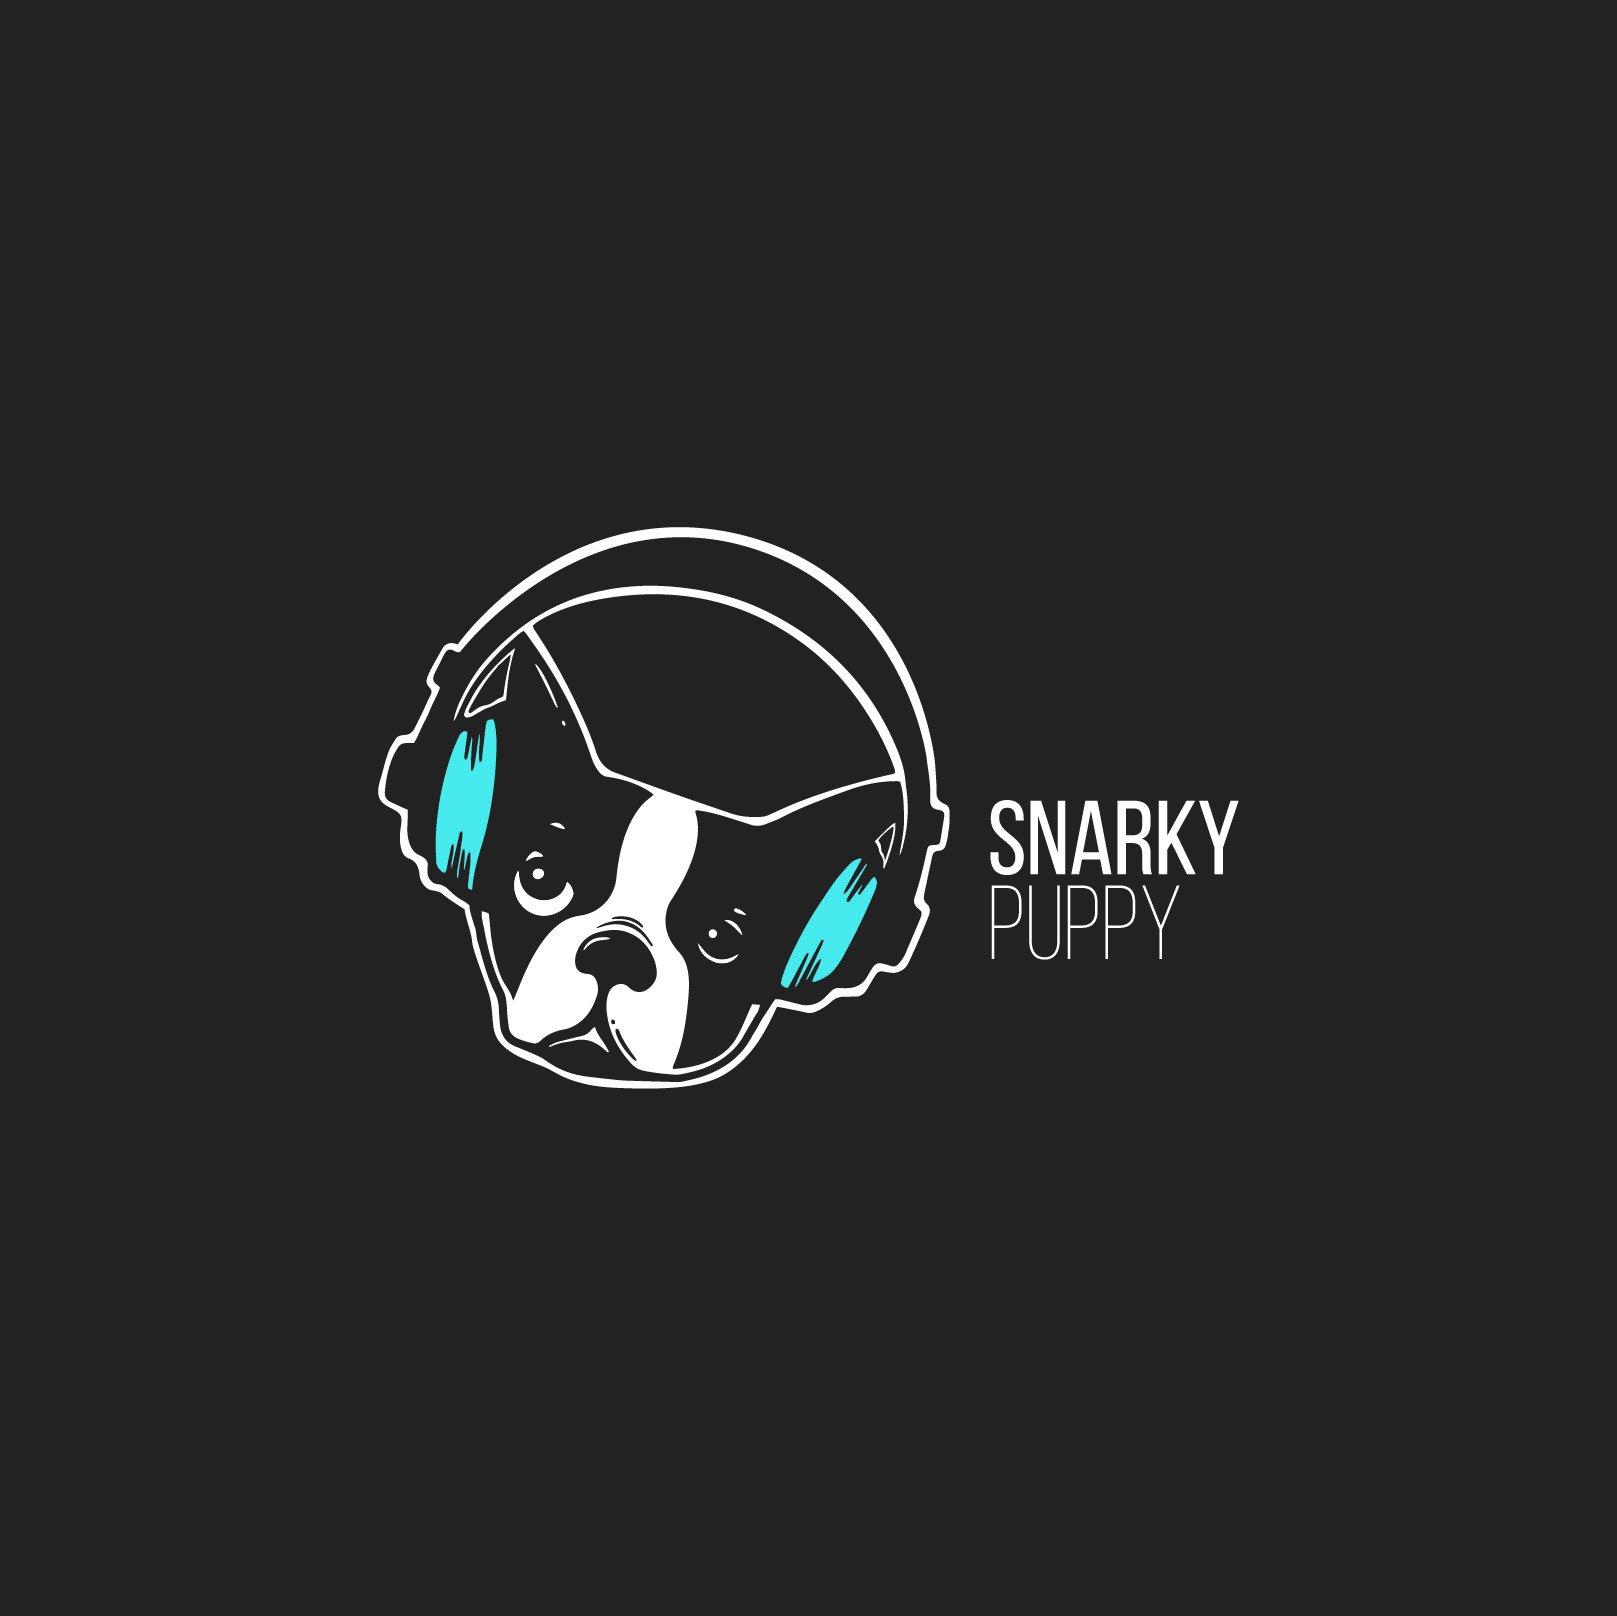 Snarky Puppy - Press